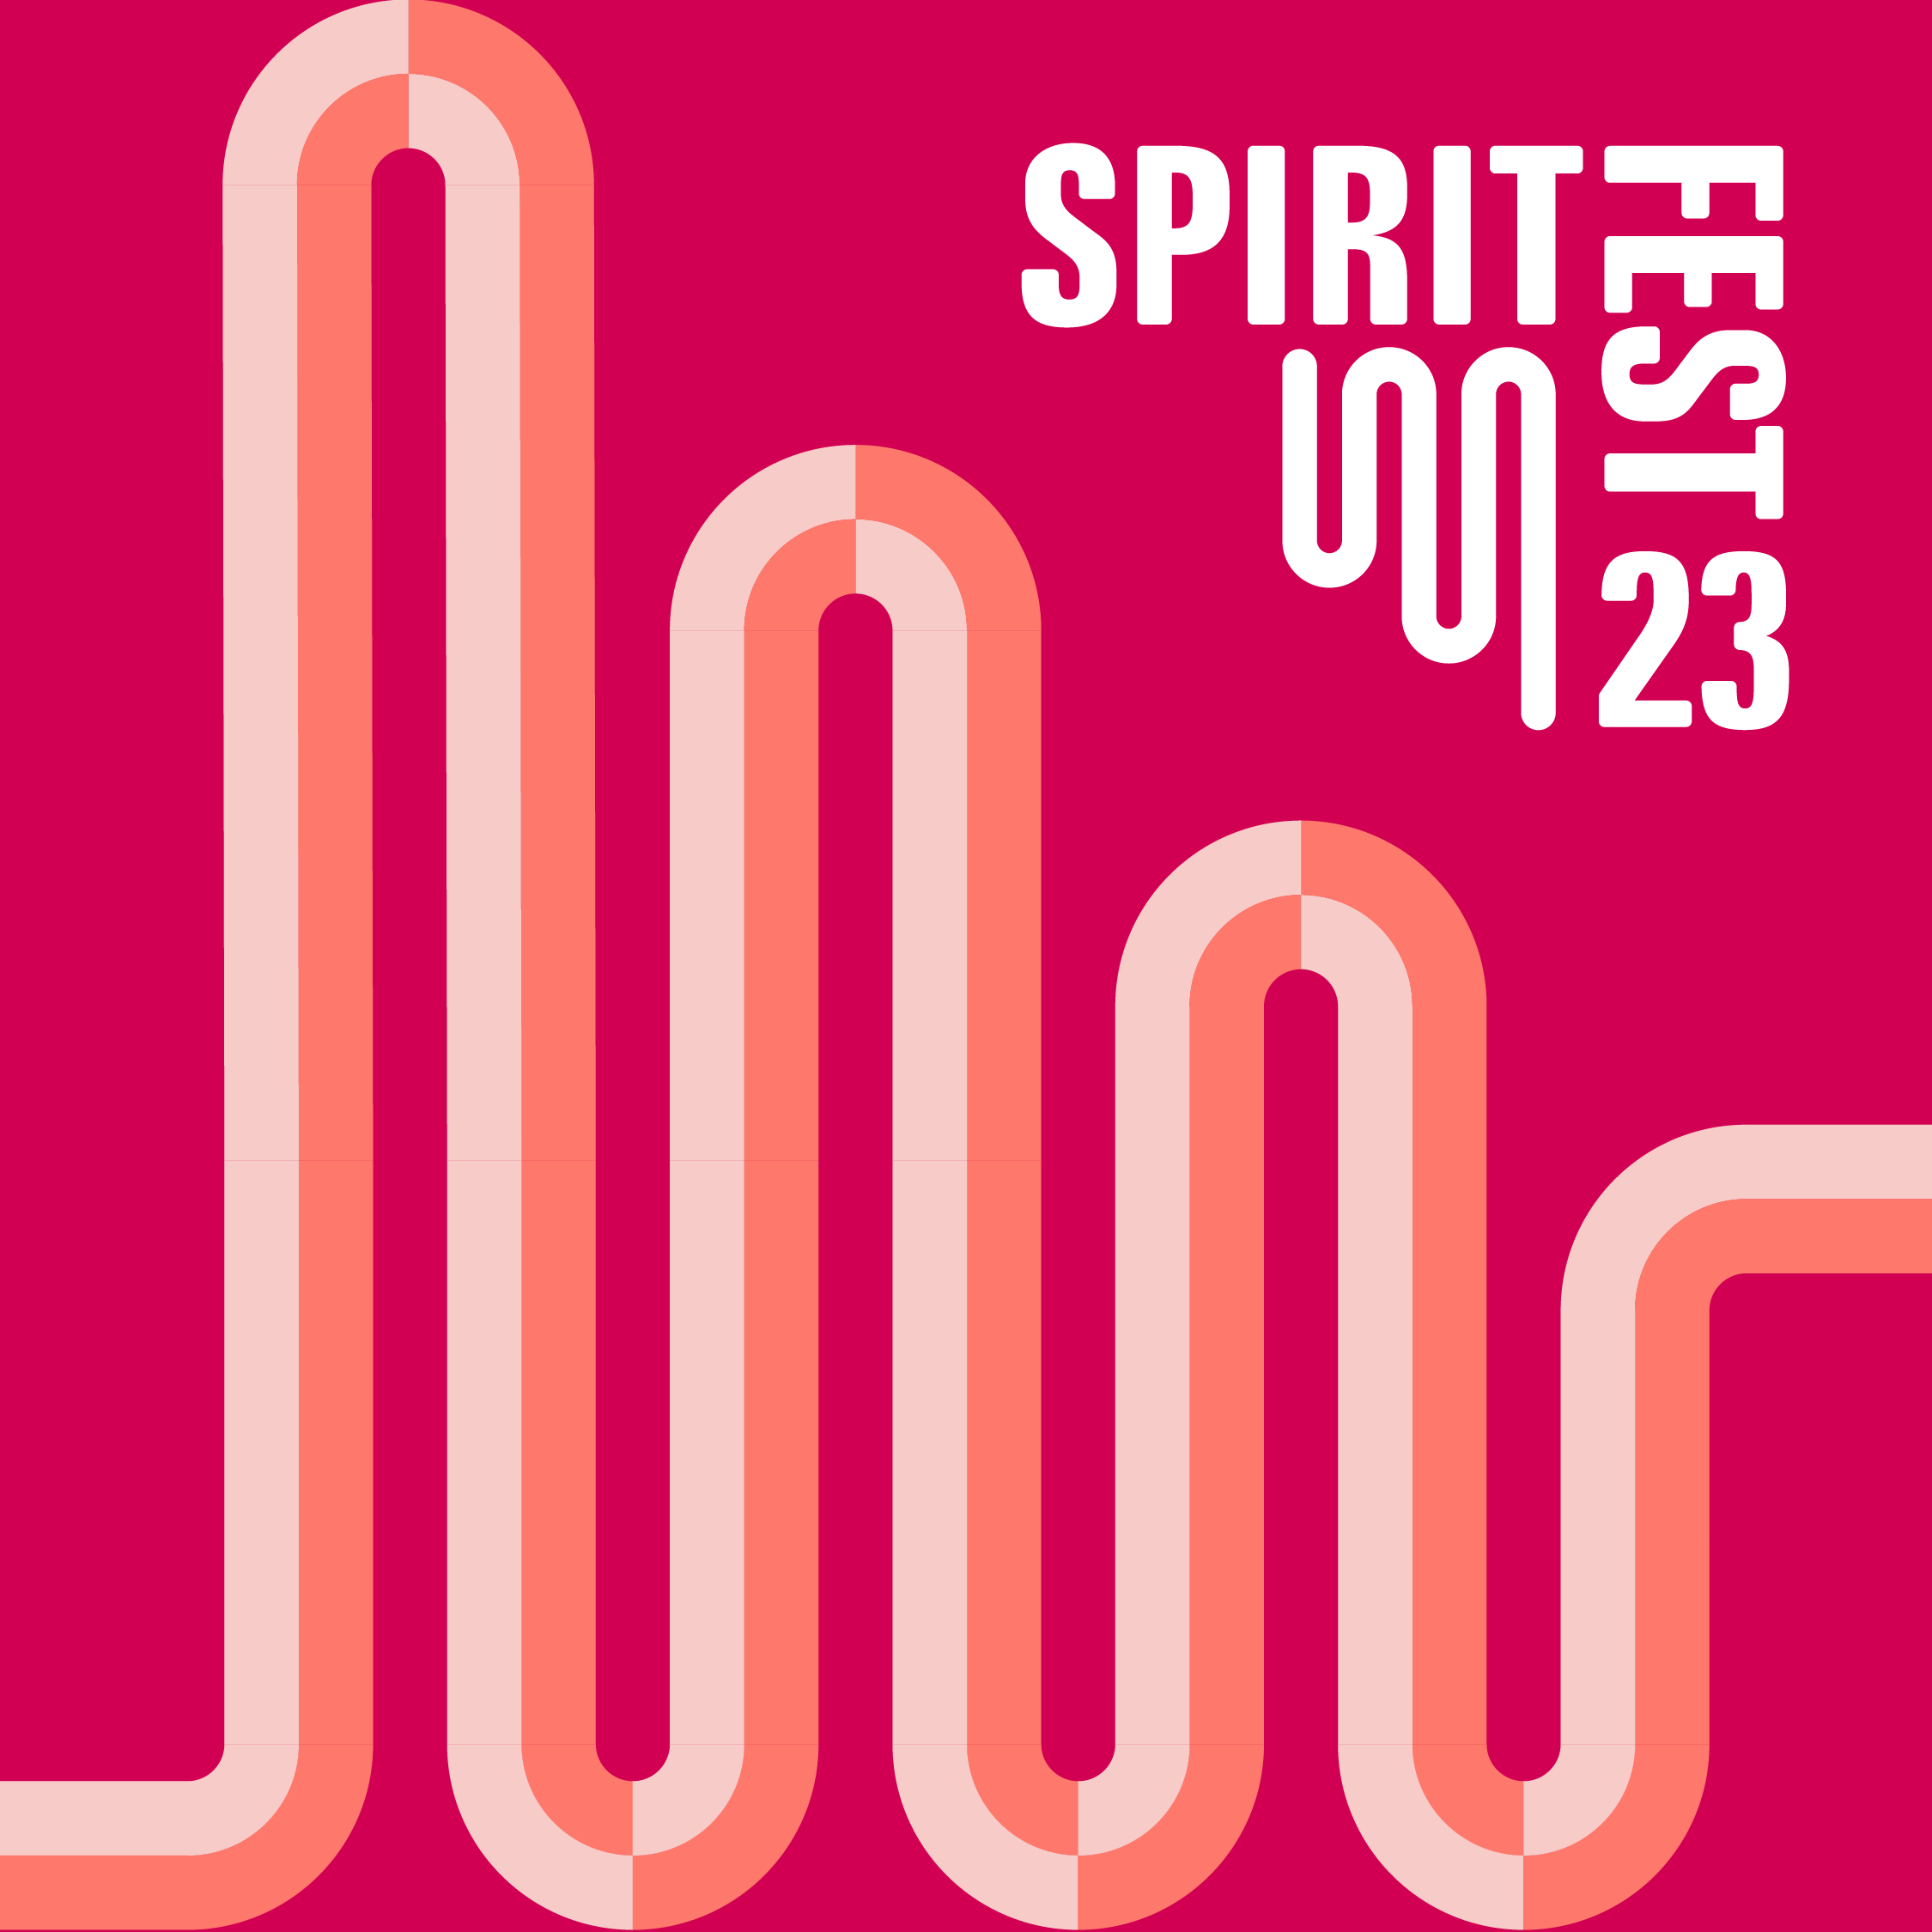 SpiritFest 2023 Brand Identity